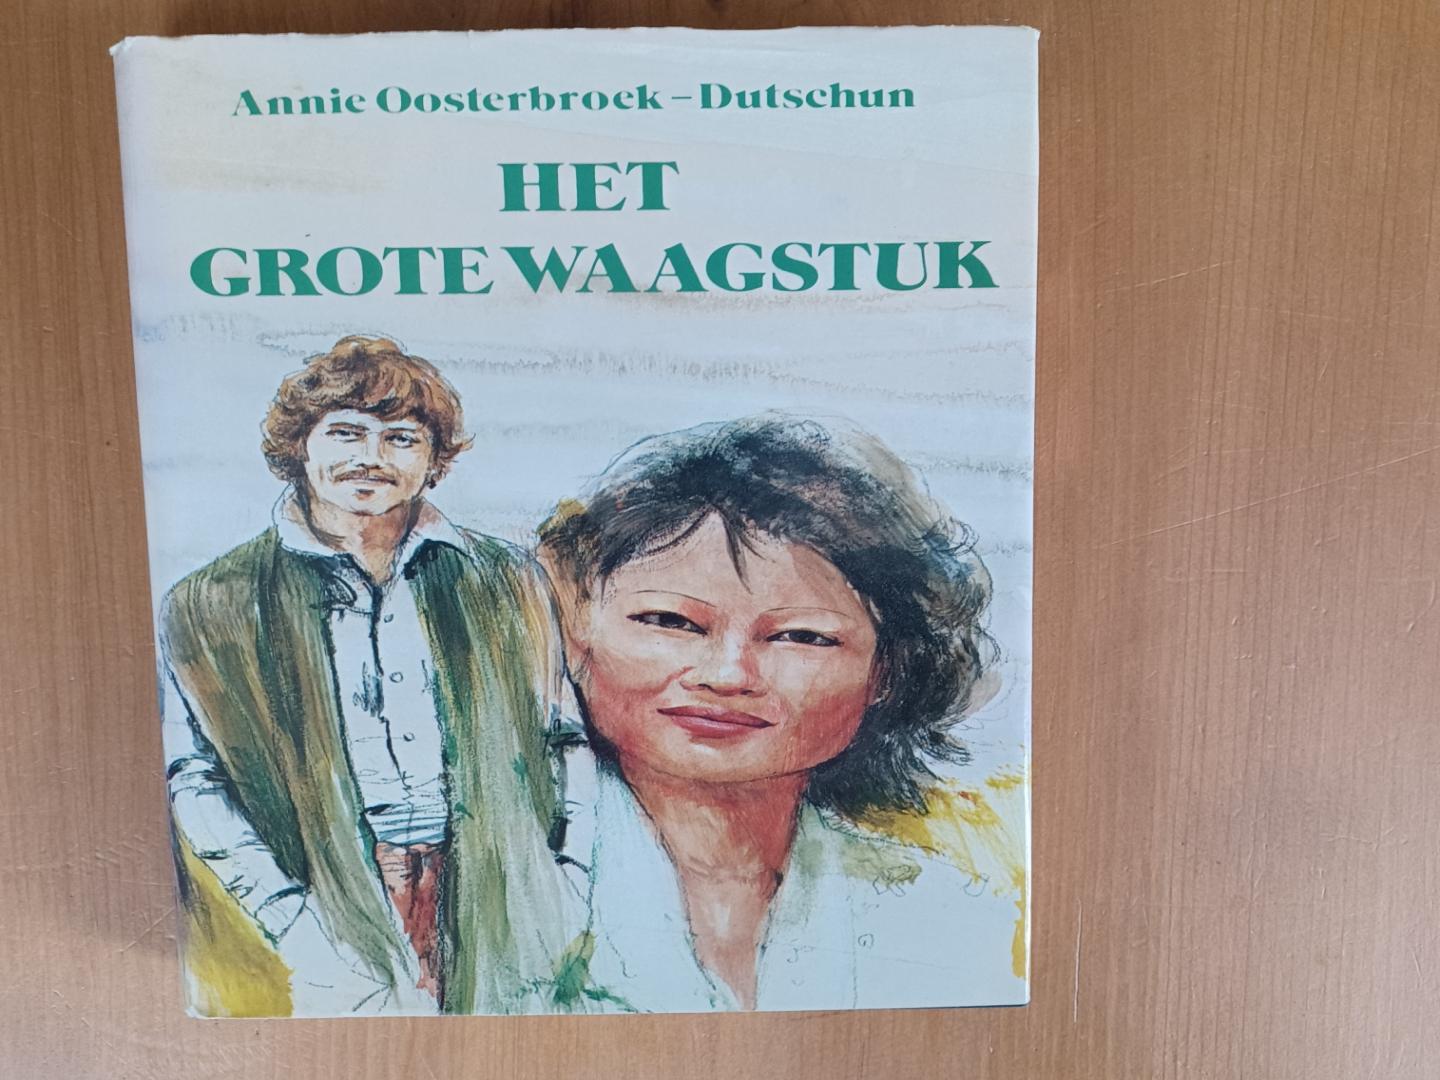 Oosterbroek Dutschun, Annie - Het grote waagstuk